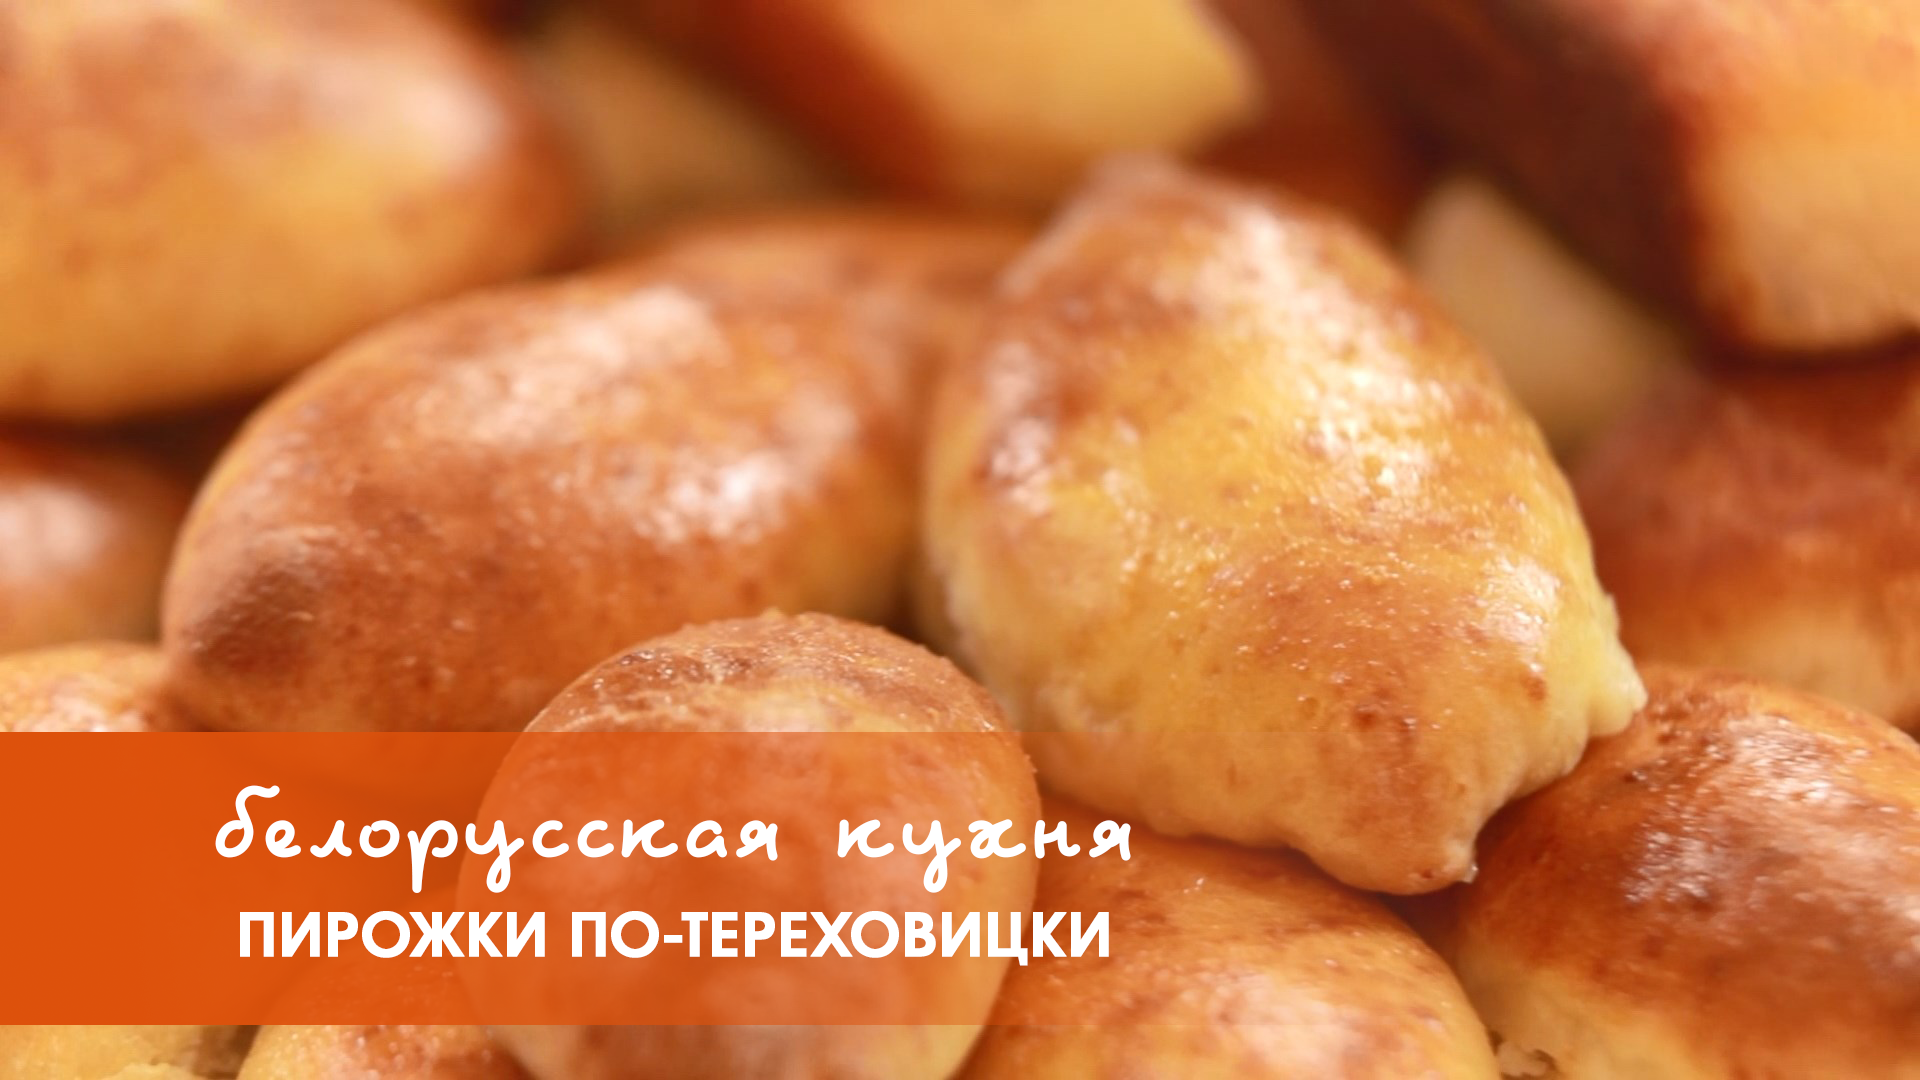 Белорусская кухня: пирожки по-тереховицки